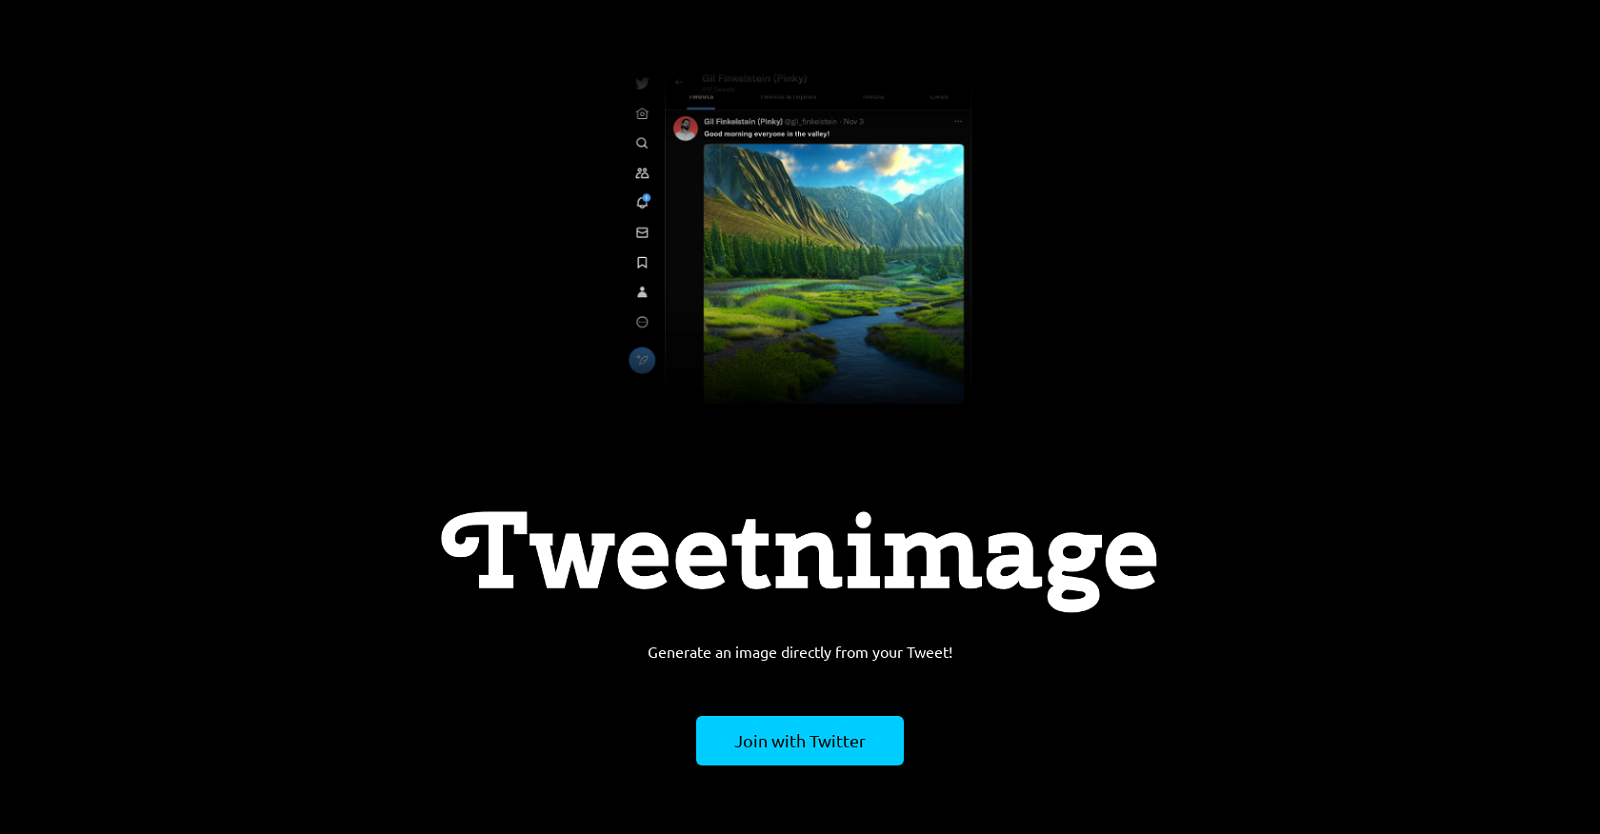 Tweetnimage website